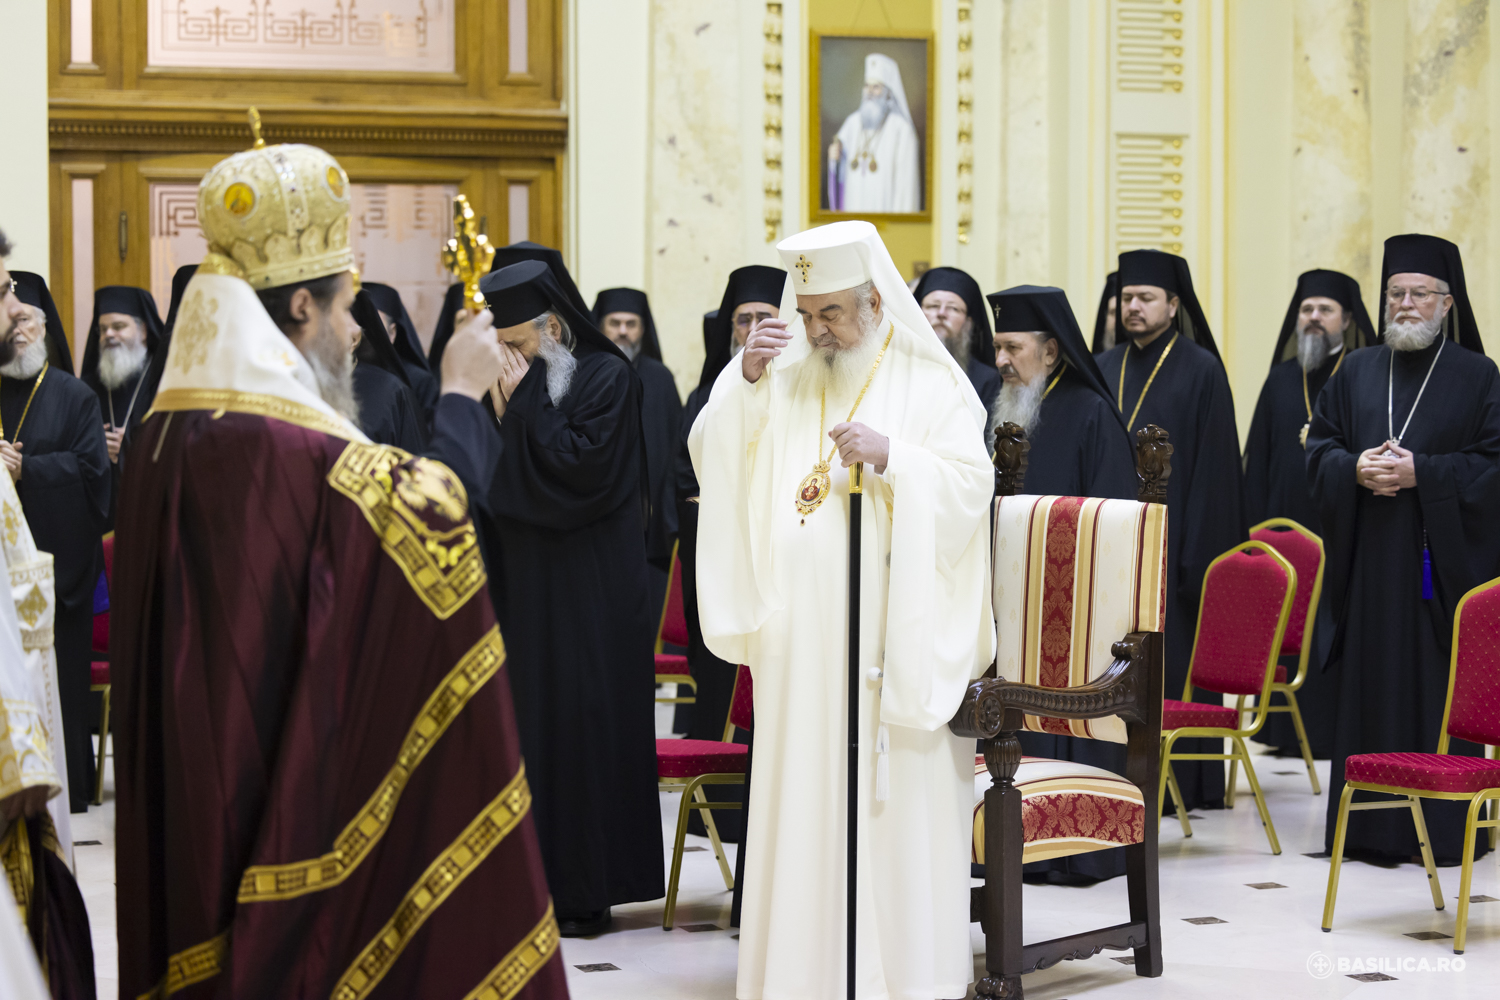 Sinodul BOR confirmă statutul canonic al Bisericii Ortodoxe Române în R. Moldova, al clerului și credincioșilor săi